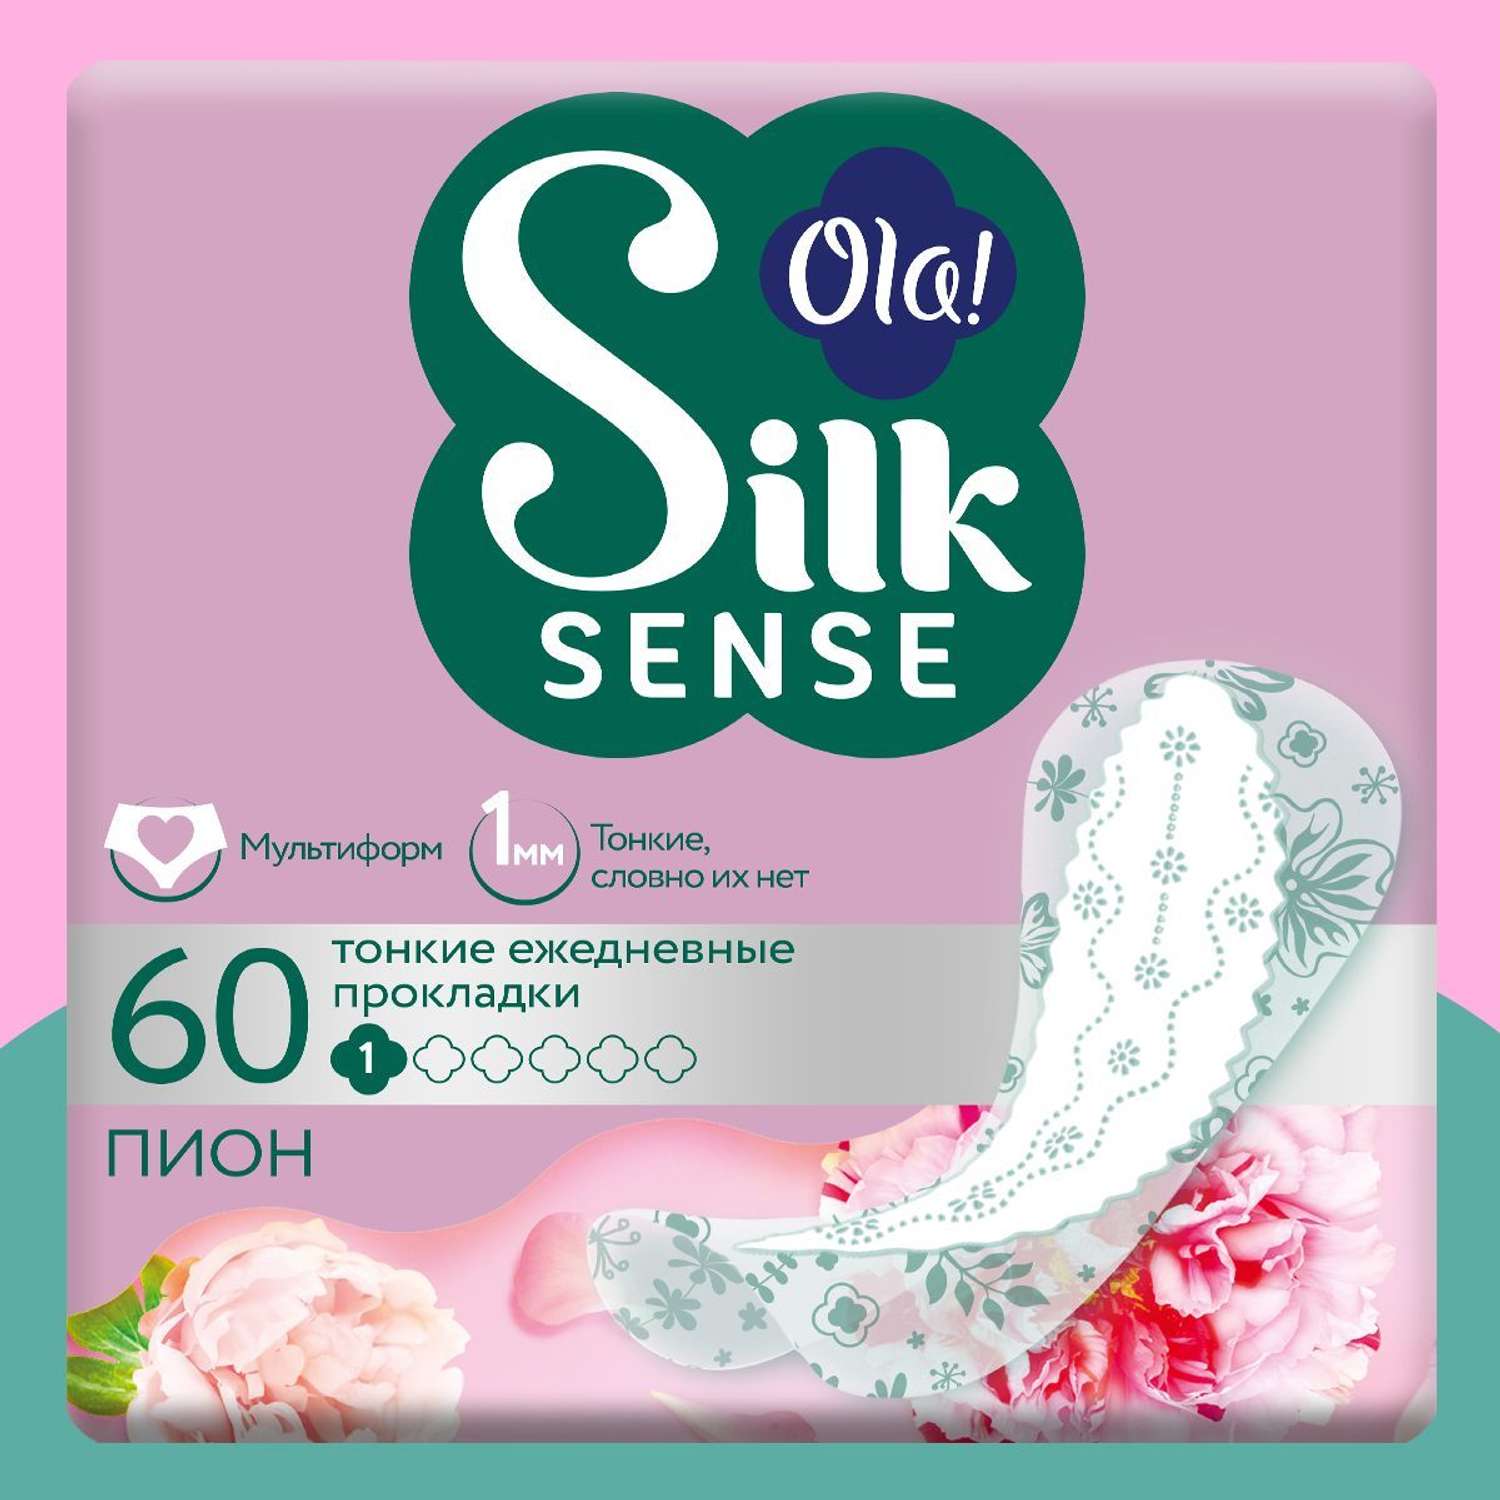 Ежедневные прокладки Ola! Silk Sense Light ультратонкие аромат Белый пион 60 шт - фото 1